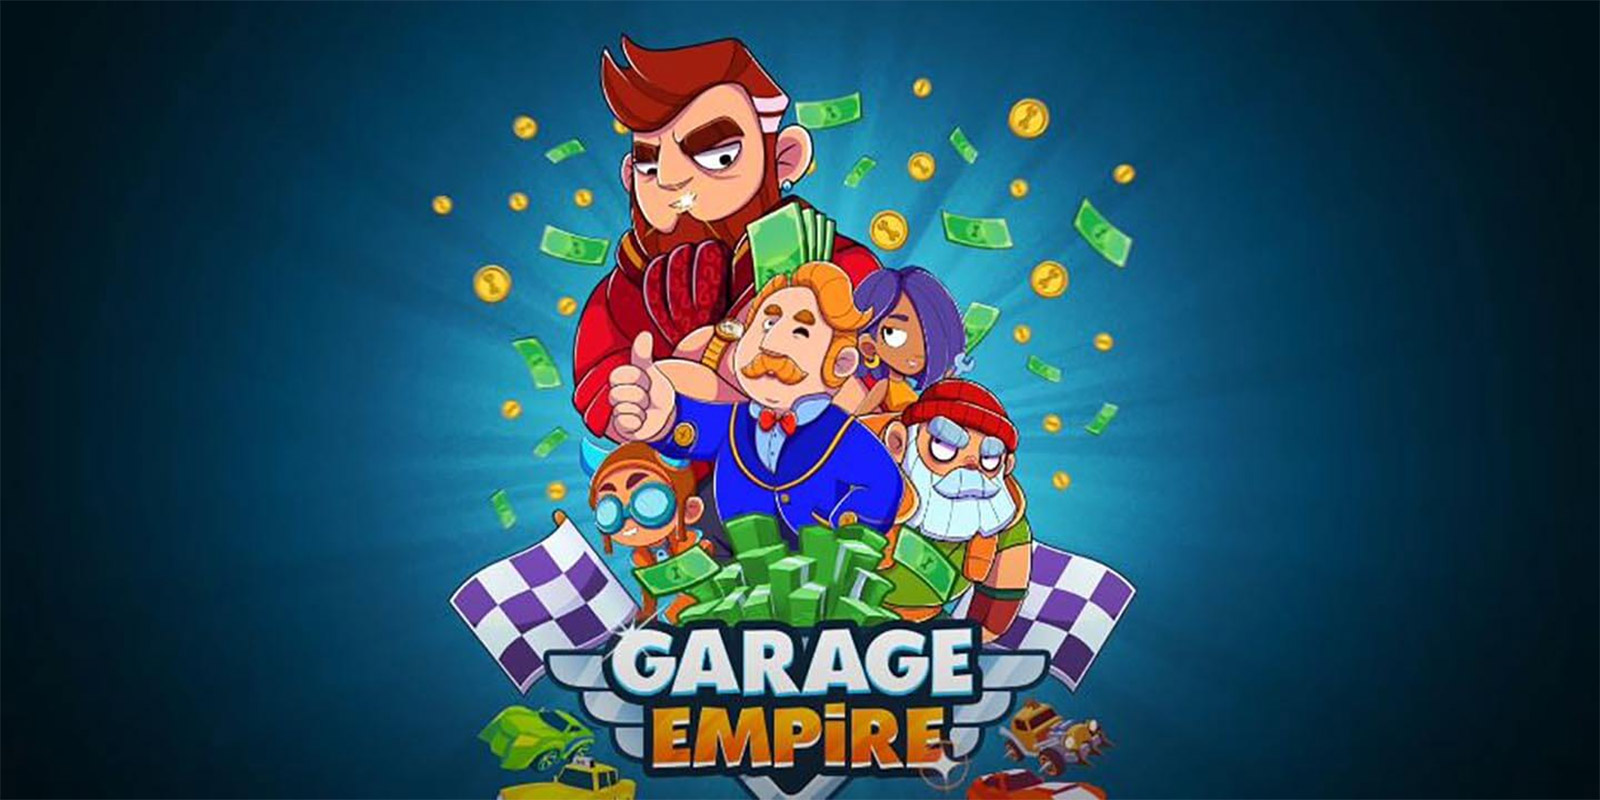 Garage Empire Mod Apk 2.6.1 (Unlimited Money)